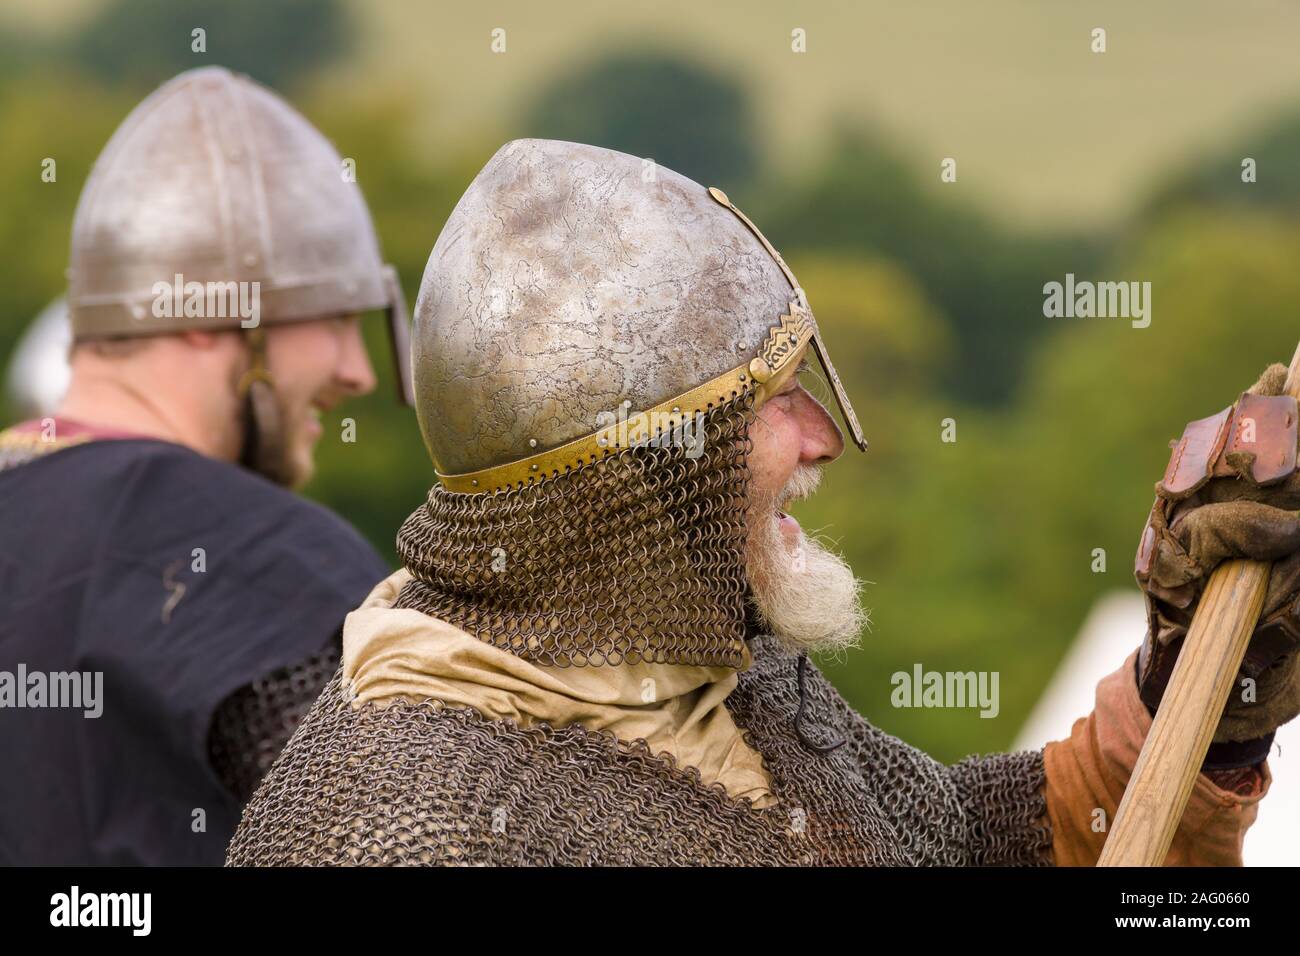 Mittelalterliche Schlacht Re-enactment mit Männern das Tragen eines cervelliere oder Skull Cap Helm und Kettenhemd aventail oder camail den Hals zu schützen. Stockfoto